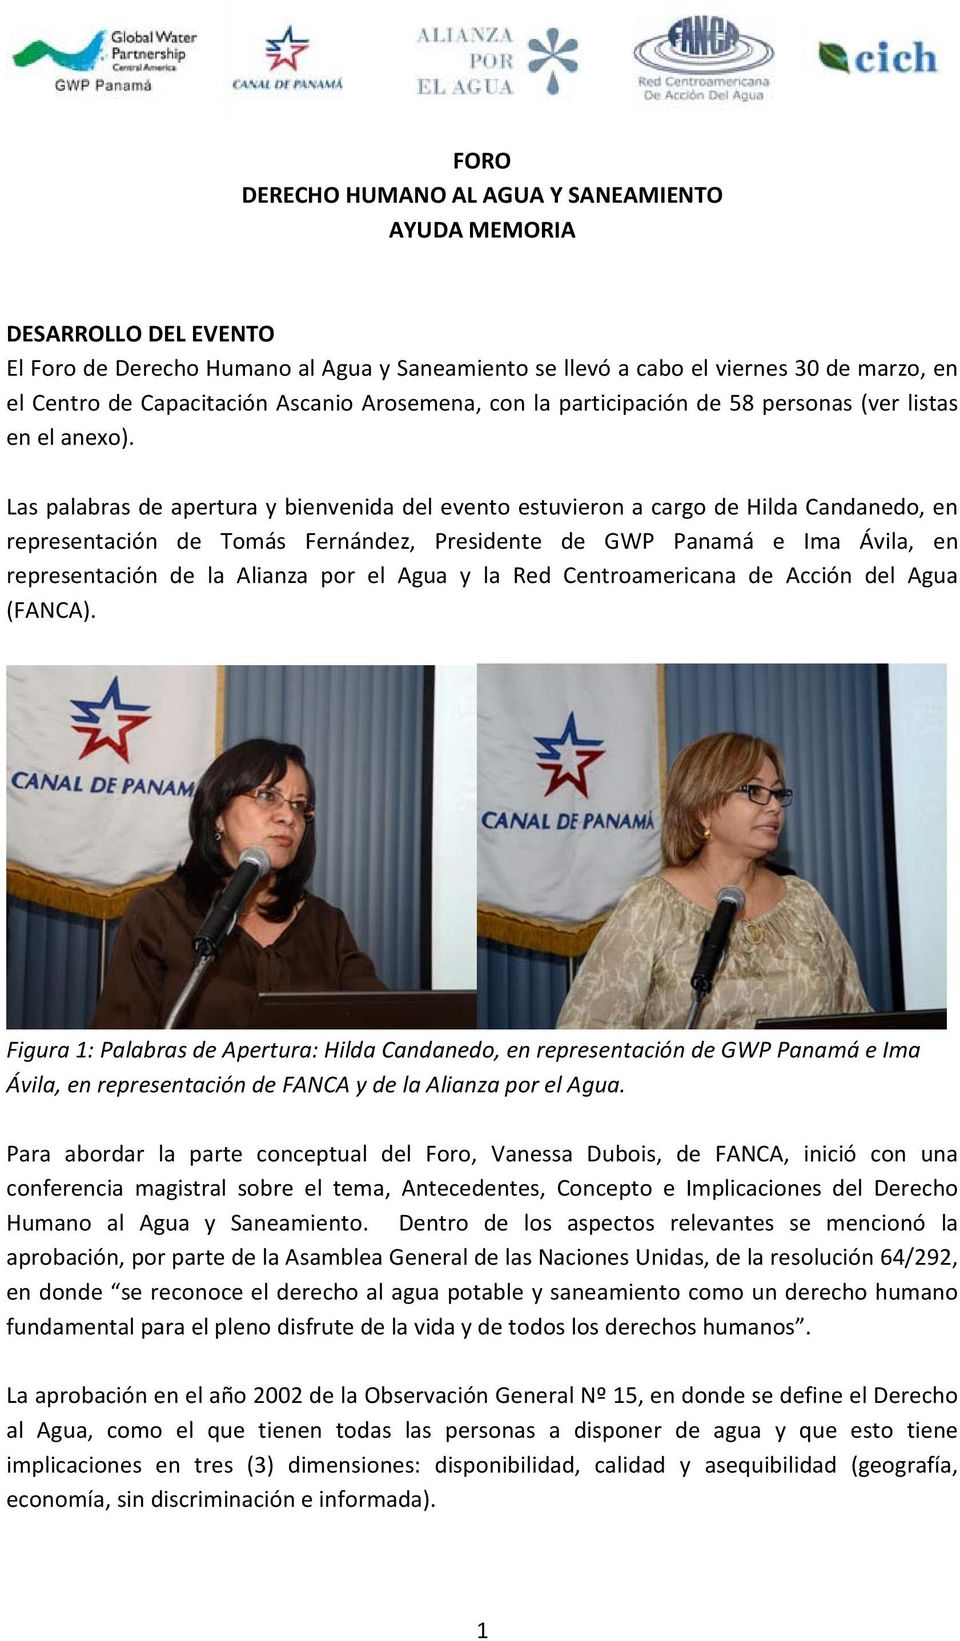 Las palabras de apertura y bienvenida del evento estuvieron a cargo de Hilda Candanedo, en representación de Tomás Fernández, Presidente de GWP Panamá e Ima Ávila, en representación de la Alianza por